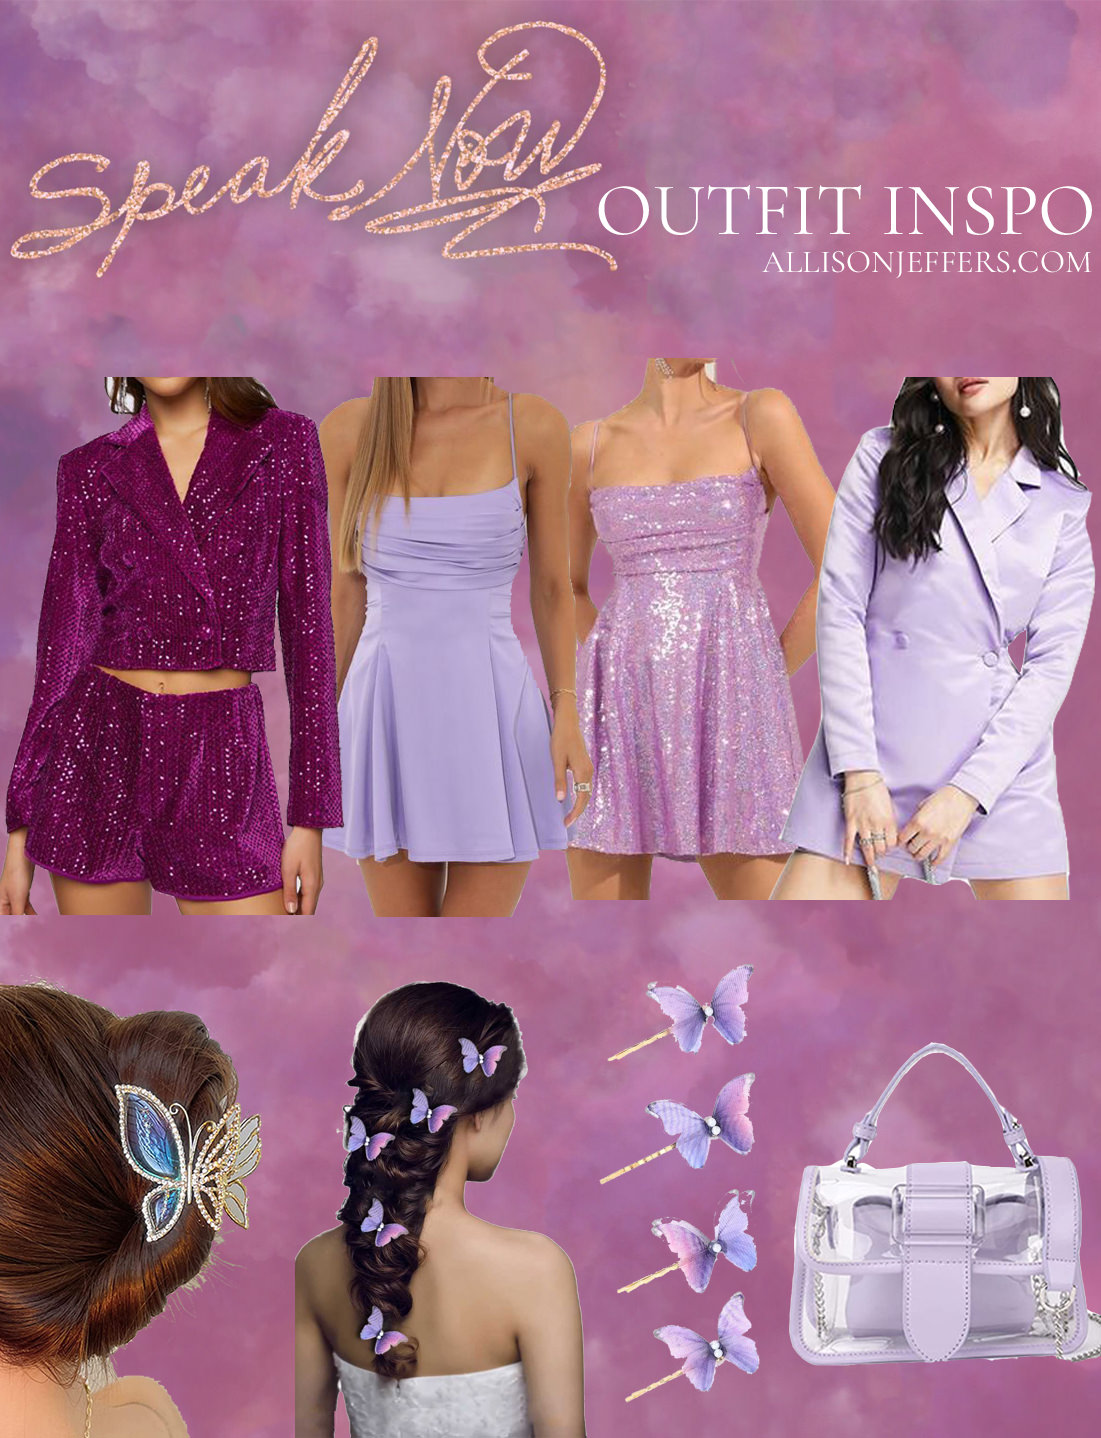 taylor swift eras tour speak now outfit ideas eras concert purple dresses and accessories copy